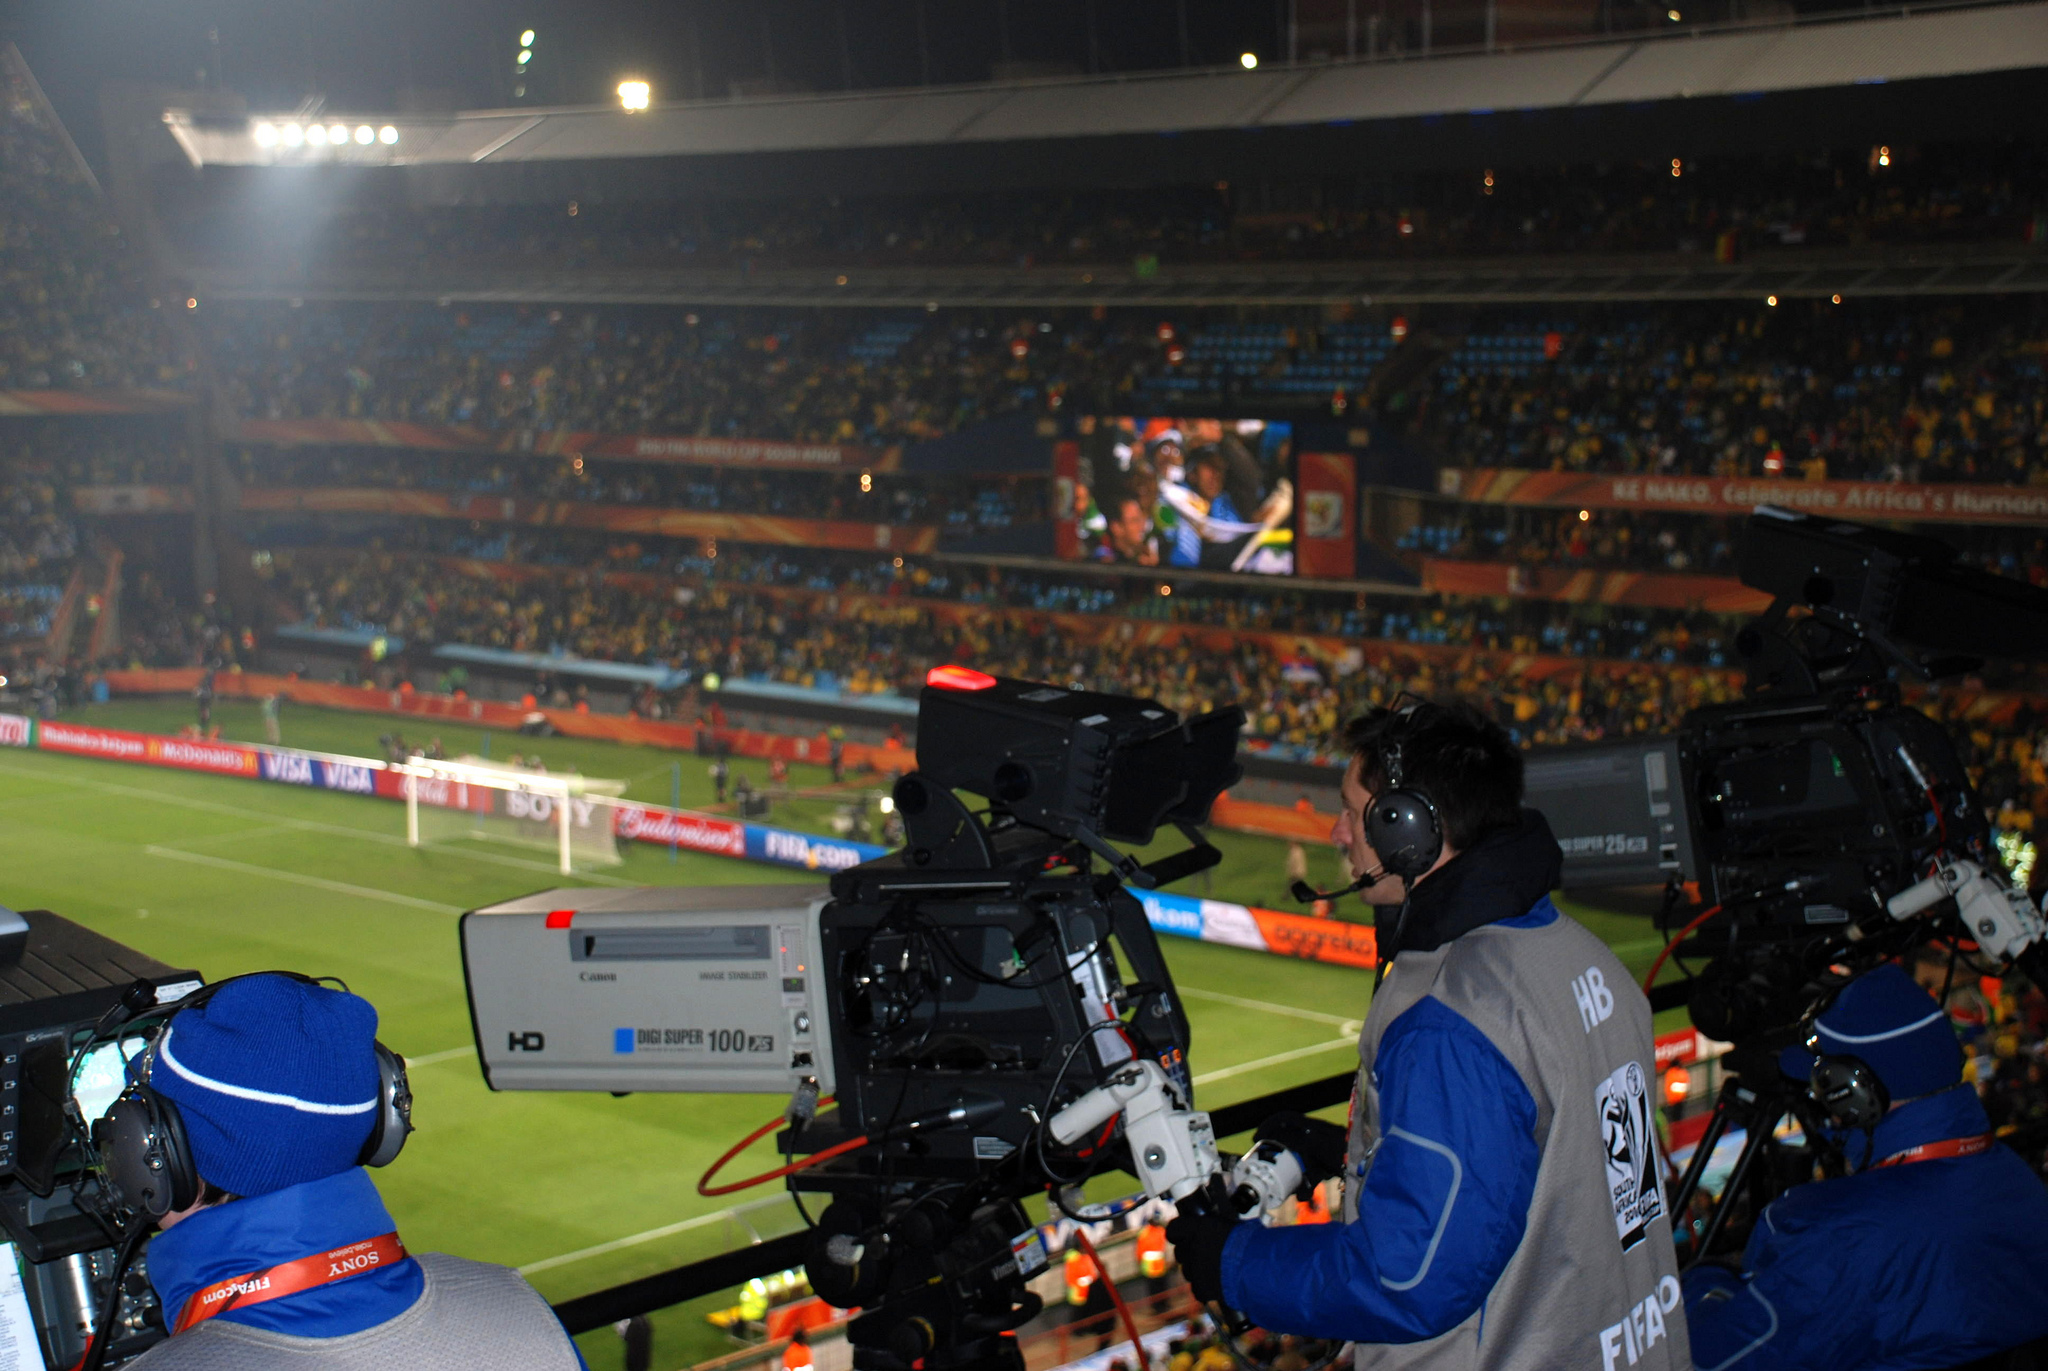 Cámara grabando en HD el partido Sudáfrica-Uruguay, del Mundial 2010. Imagen: Richard Matthews. Fuente: Flickr.